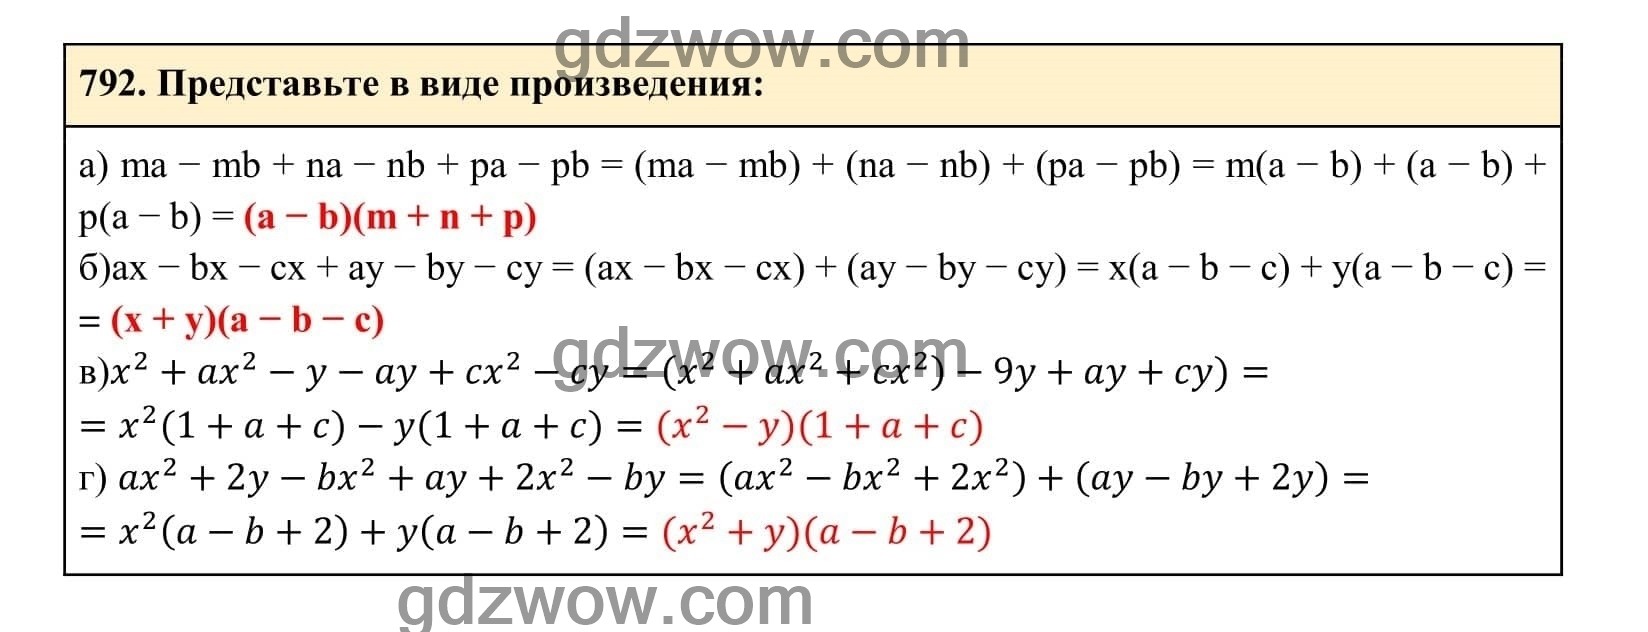 Упражнение 792 - ГДЗ по Алгебре 7 класс Учебник Макарычев (решебник) - GDZwow